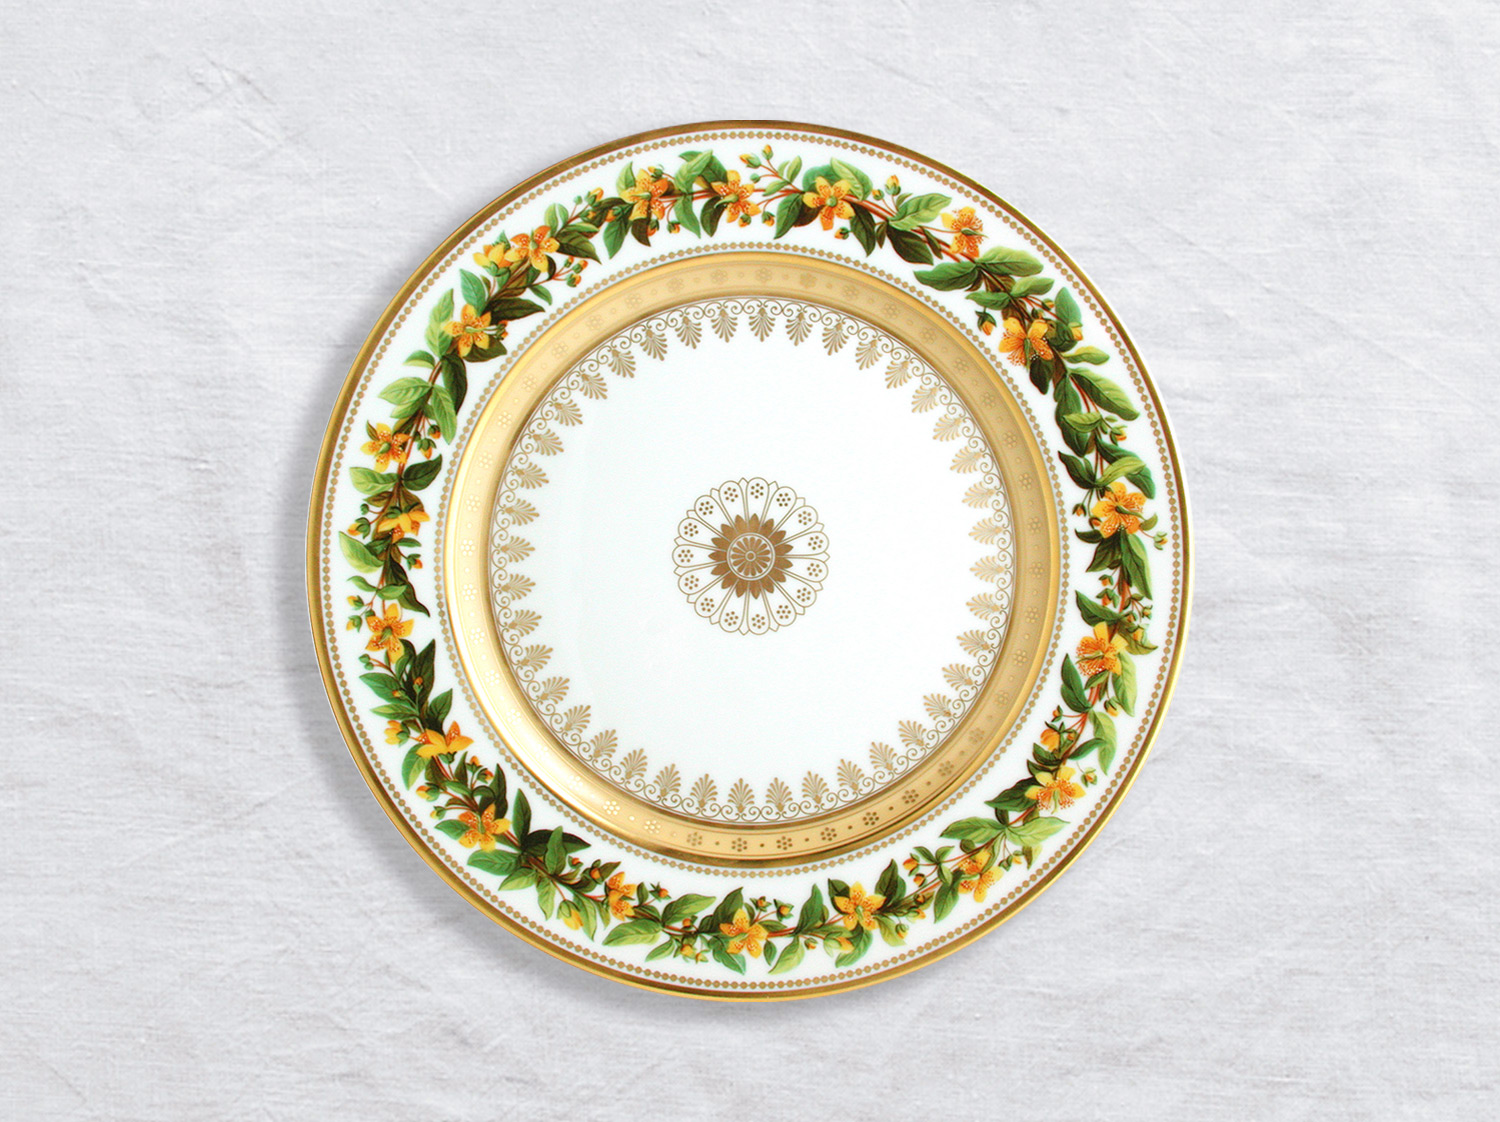 Assiette à dîner Millepertuis dresse 26 cm en porcelaine de la collection Botanique Bernardaud